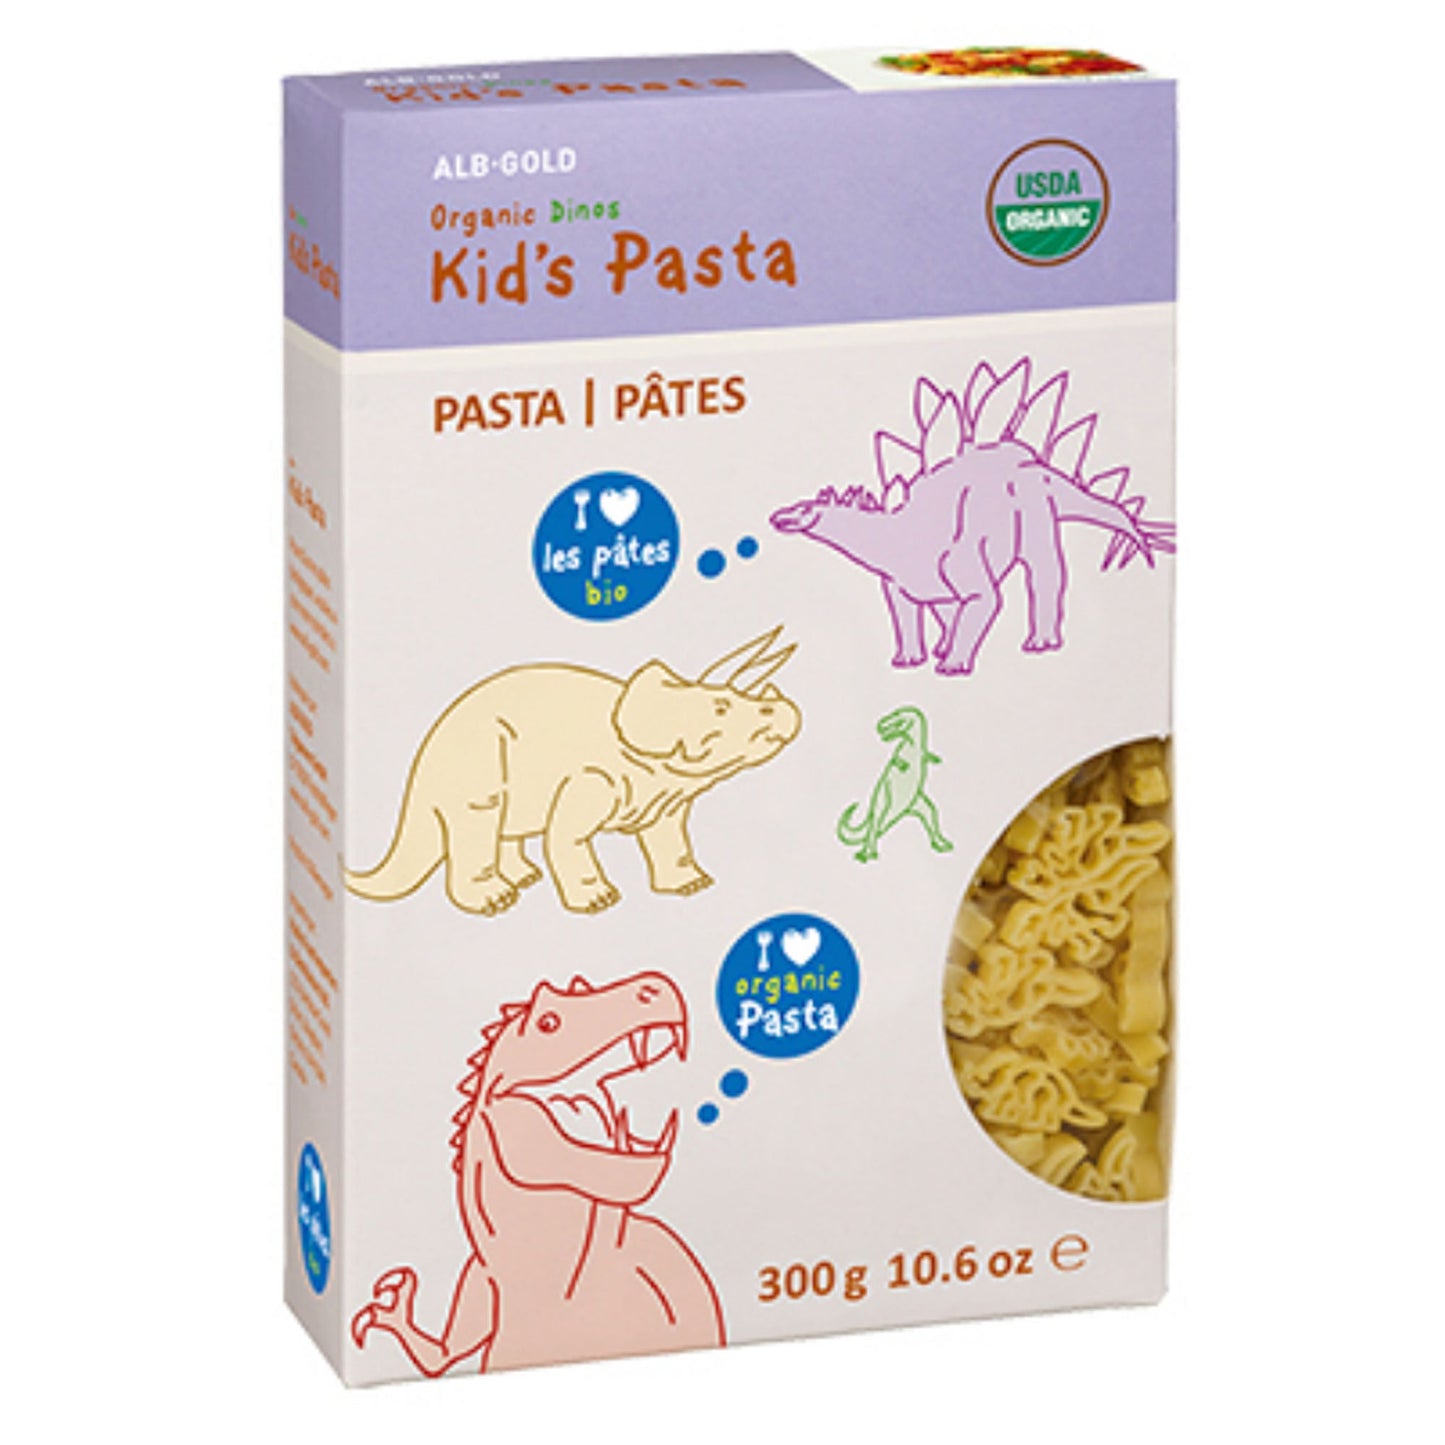 Albg-Organic Kids Pasta Dinos